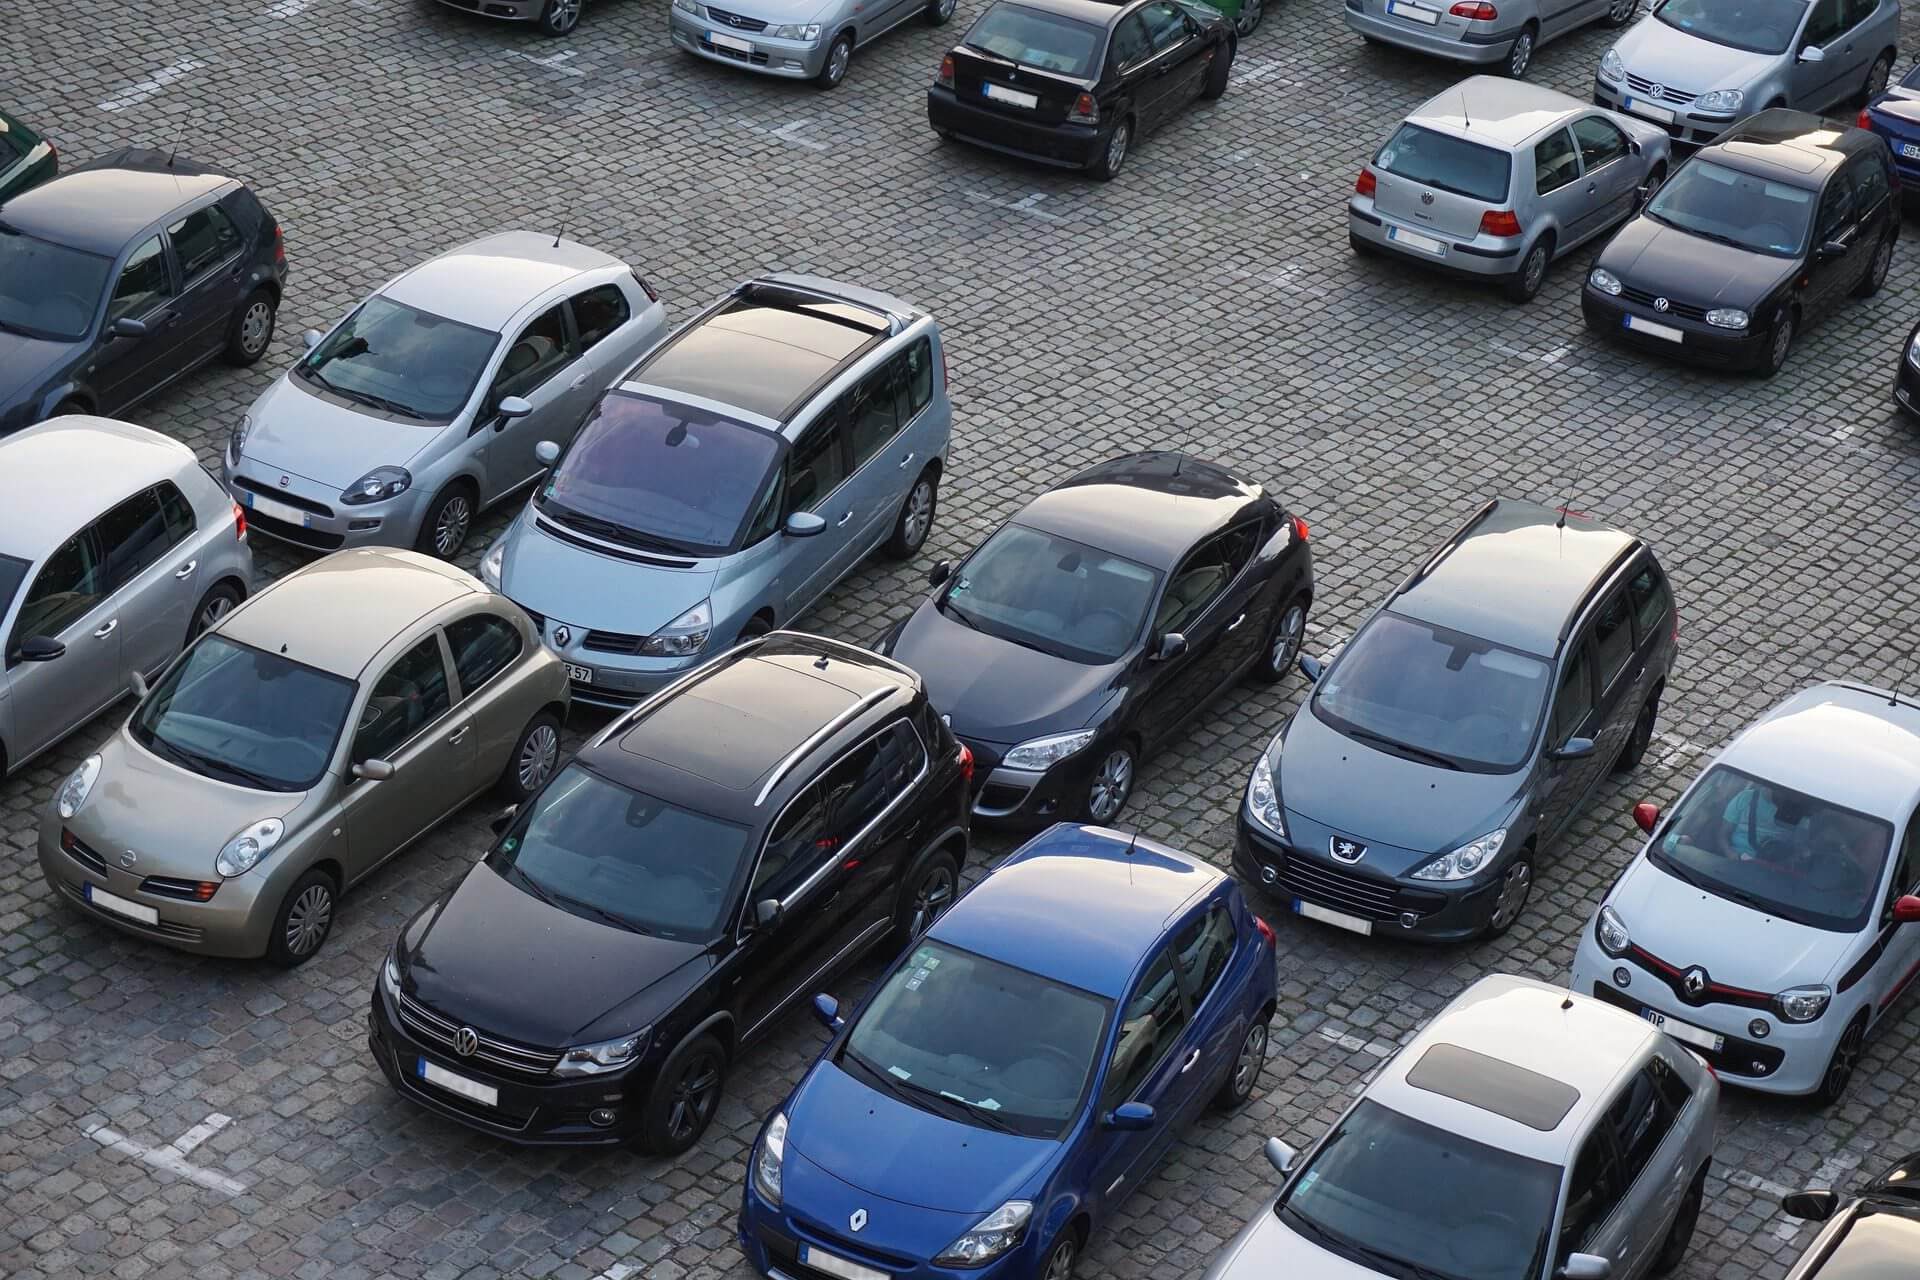 Τα μεταχειρισμένα αυτοκίνητα στην Ευρώπη δεν ήταν ποτέ πιο ακριβά: η ζήτηση υπερβαίνει την προσφορά